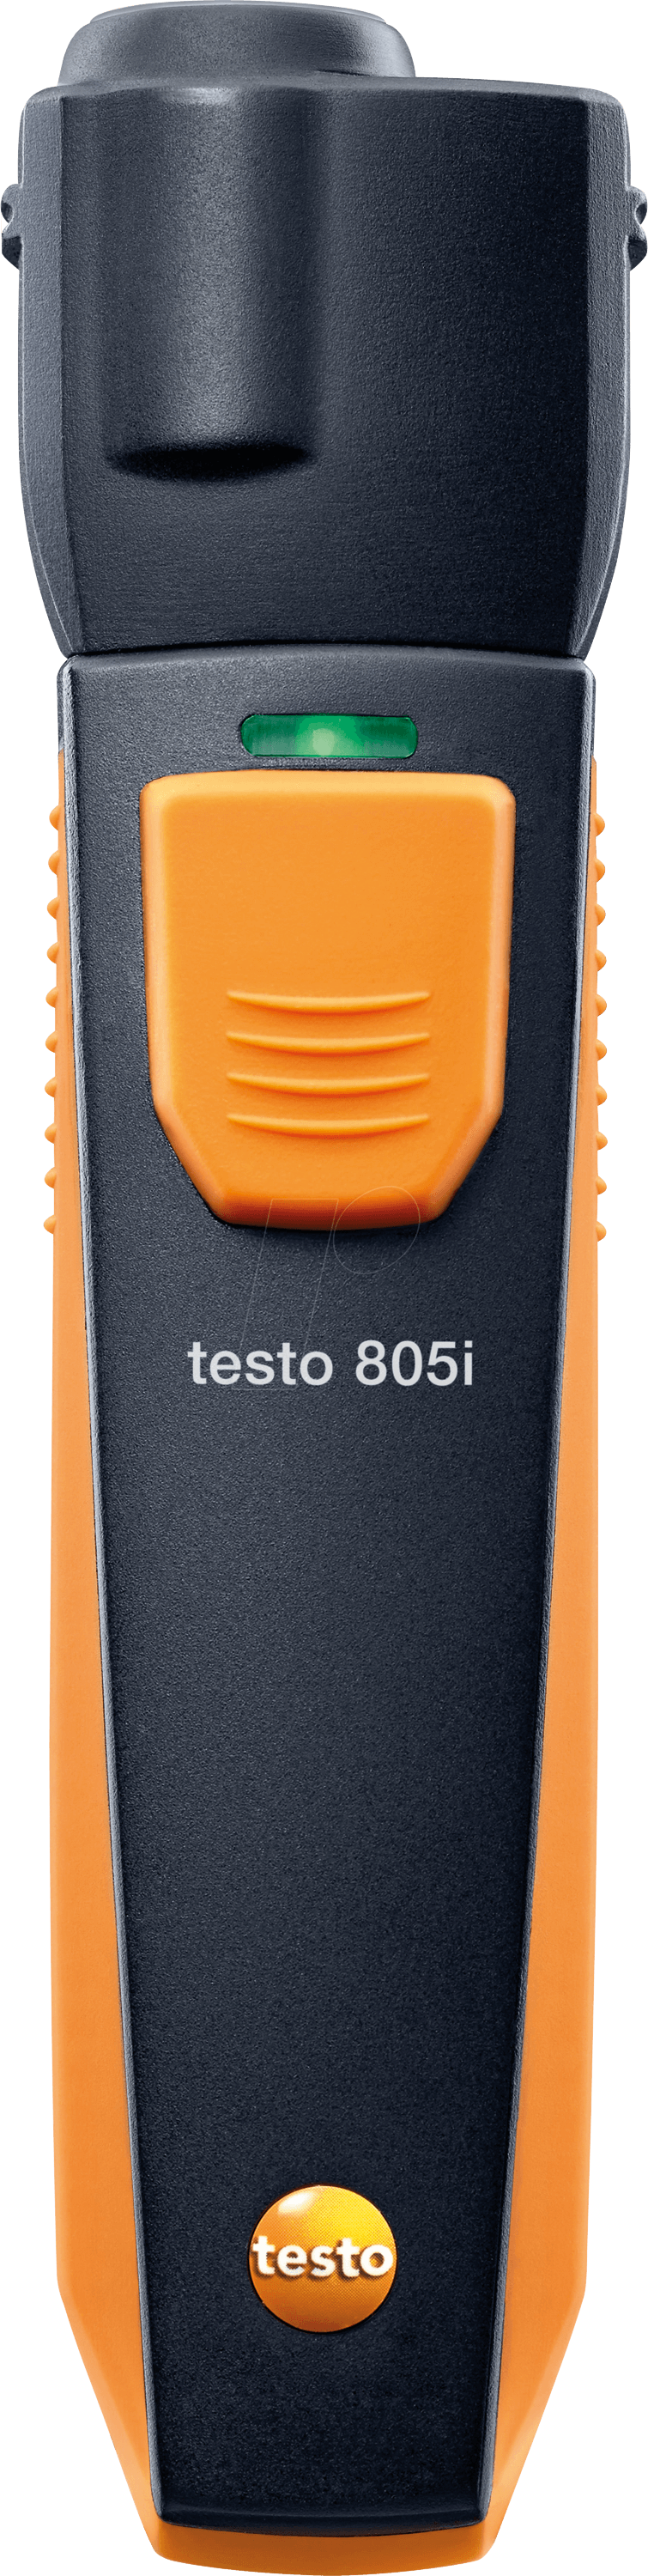 TESTO 0560 1805 - testo 805 i - Infrarot-Thermometer von TESTO